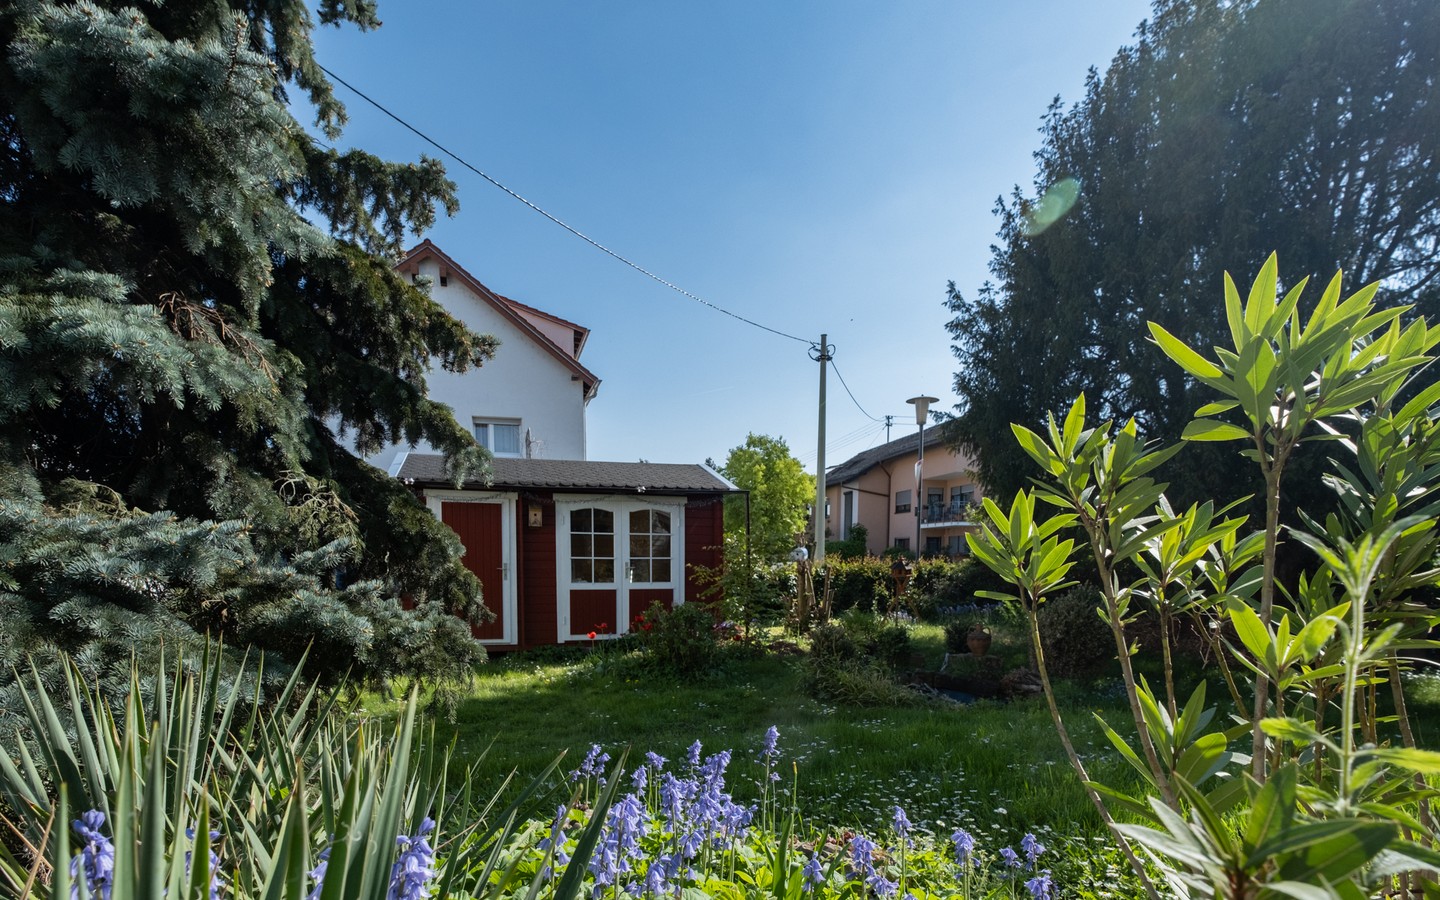 Gartenbereich - Freistehendes 2-Familienhaus mit großem Gartengrundstück und viel Platz in Eppelheim (Erbpacht)